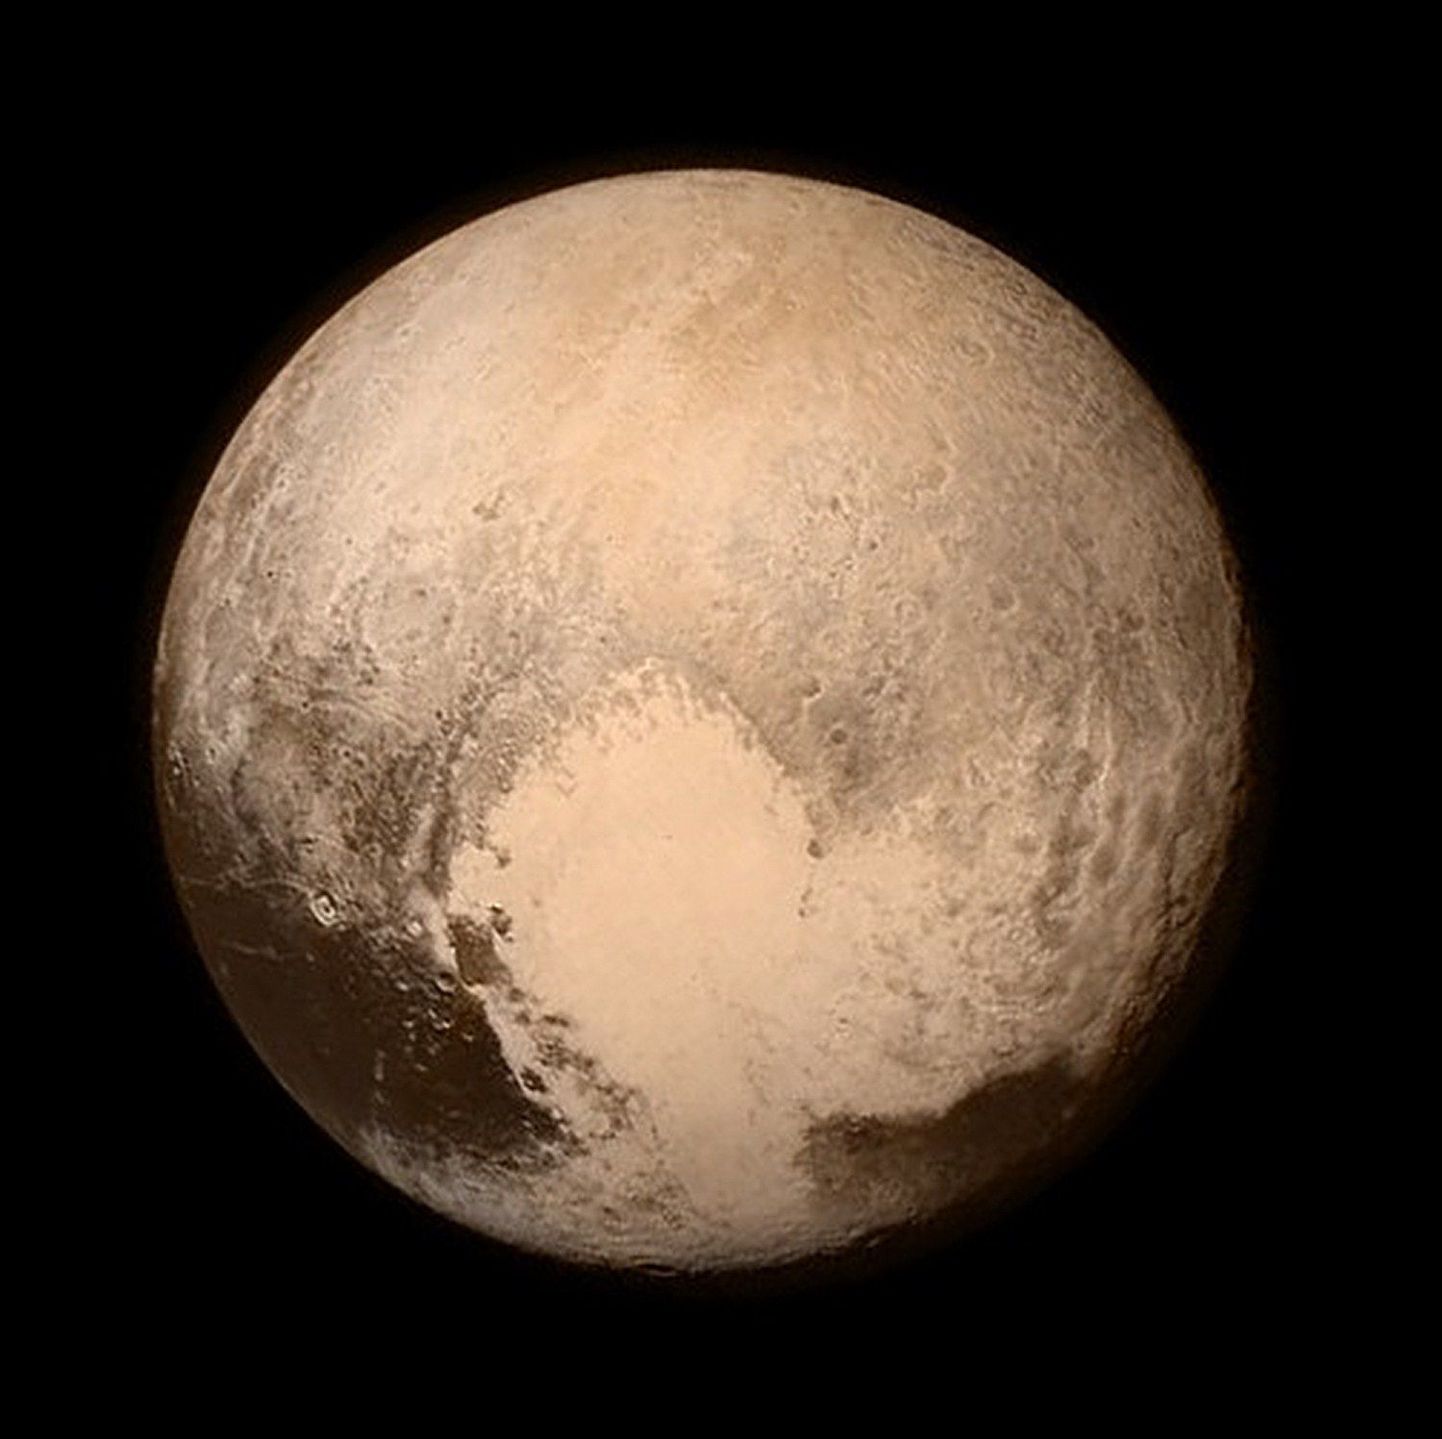 Täna avaldatud pilt Pluuto pinnast toob nähtavale seni inimkonna eest varjatuks jäänud geoloogilised moodustised kääbusplaneedi pinnal.